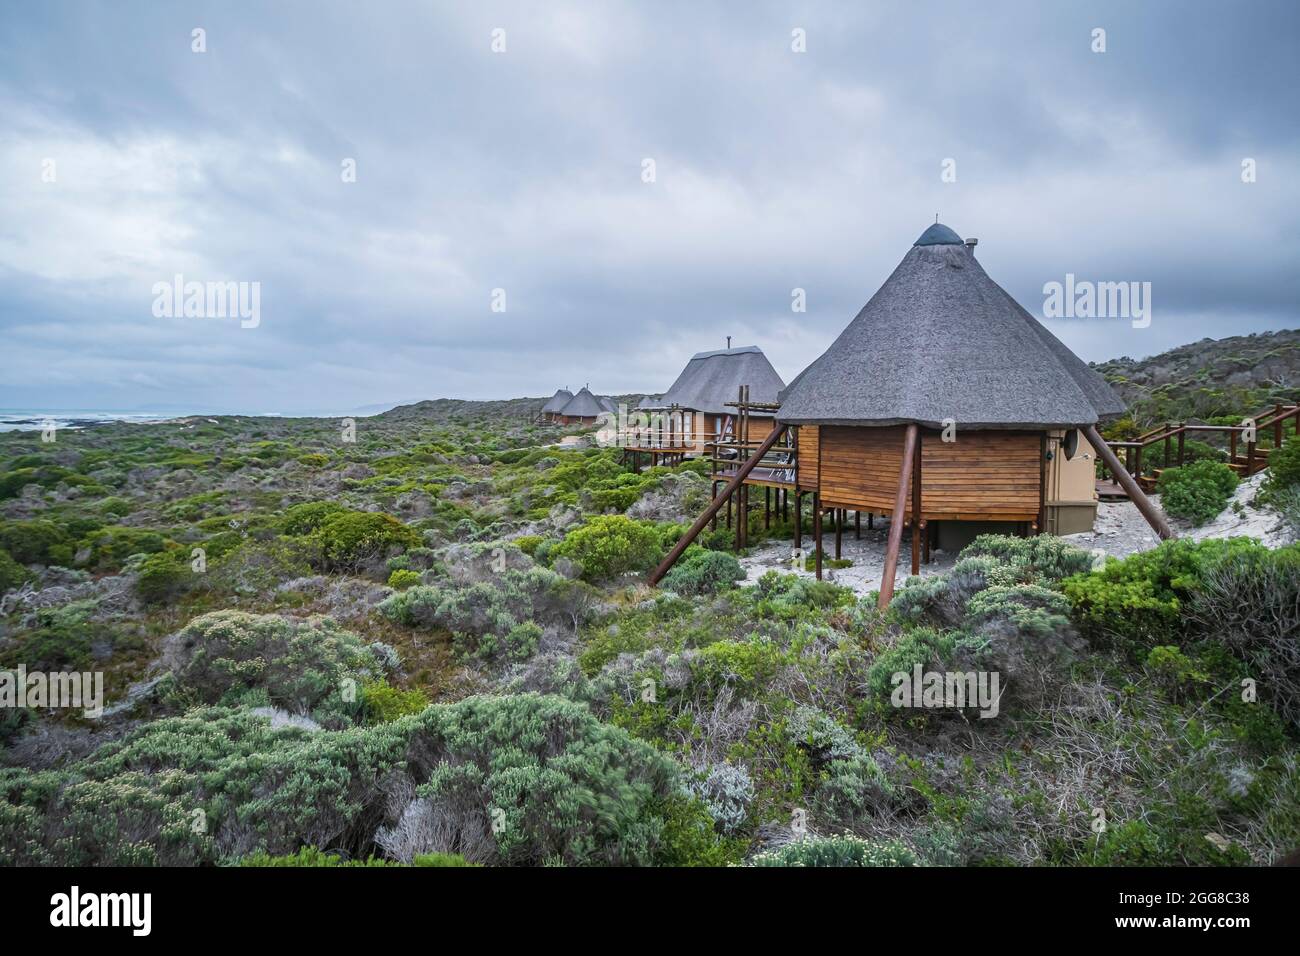 Le unità Chalet sono costruite in architettura di stile Africano al Parco Nazionale di Capo Agulhas in Sud Africa, che e' il punto piu' a sud del Continente Africano. Foto Stock